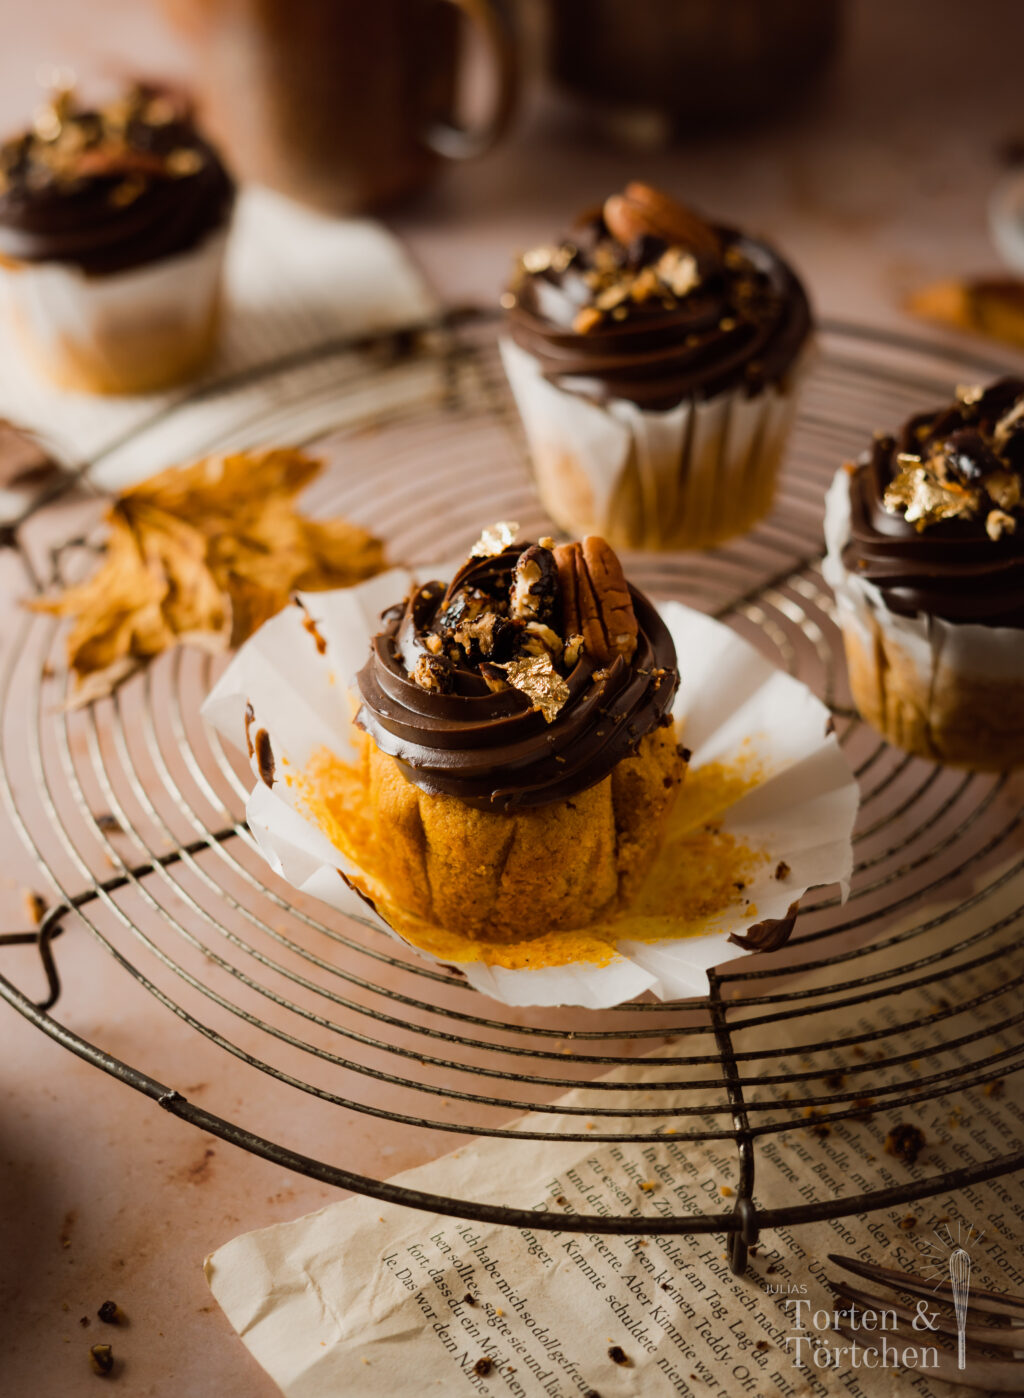 Ein einfaches Rezept für herbstliche Pumpkin Spice Cupcakes mit gebrannten Pekannüssen. Die karamellisierten Nüsse auf einer reichen Schokoadencreme passen einfach so gut zu dem gewürzten saftigen Kürbismuffin! #Pumpkinspice #backen #Rezept #Kürbis #Herbstrezepte #Nüsse #Muffins #Cupcakes